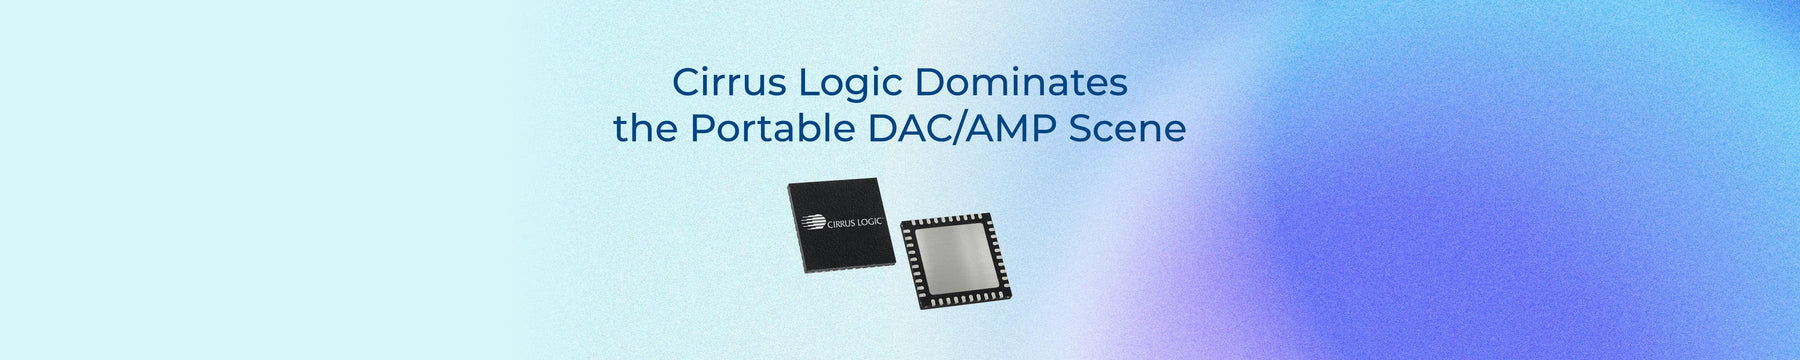 Cirrus Logic Dominates the Portable DAC/Amp Scene